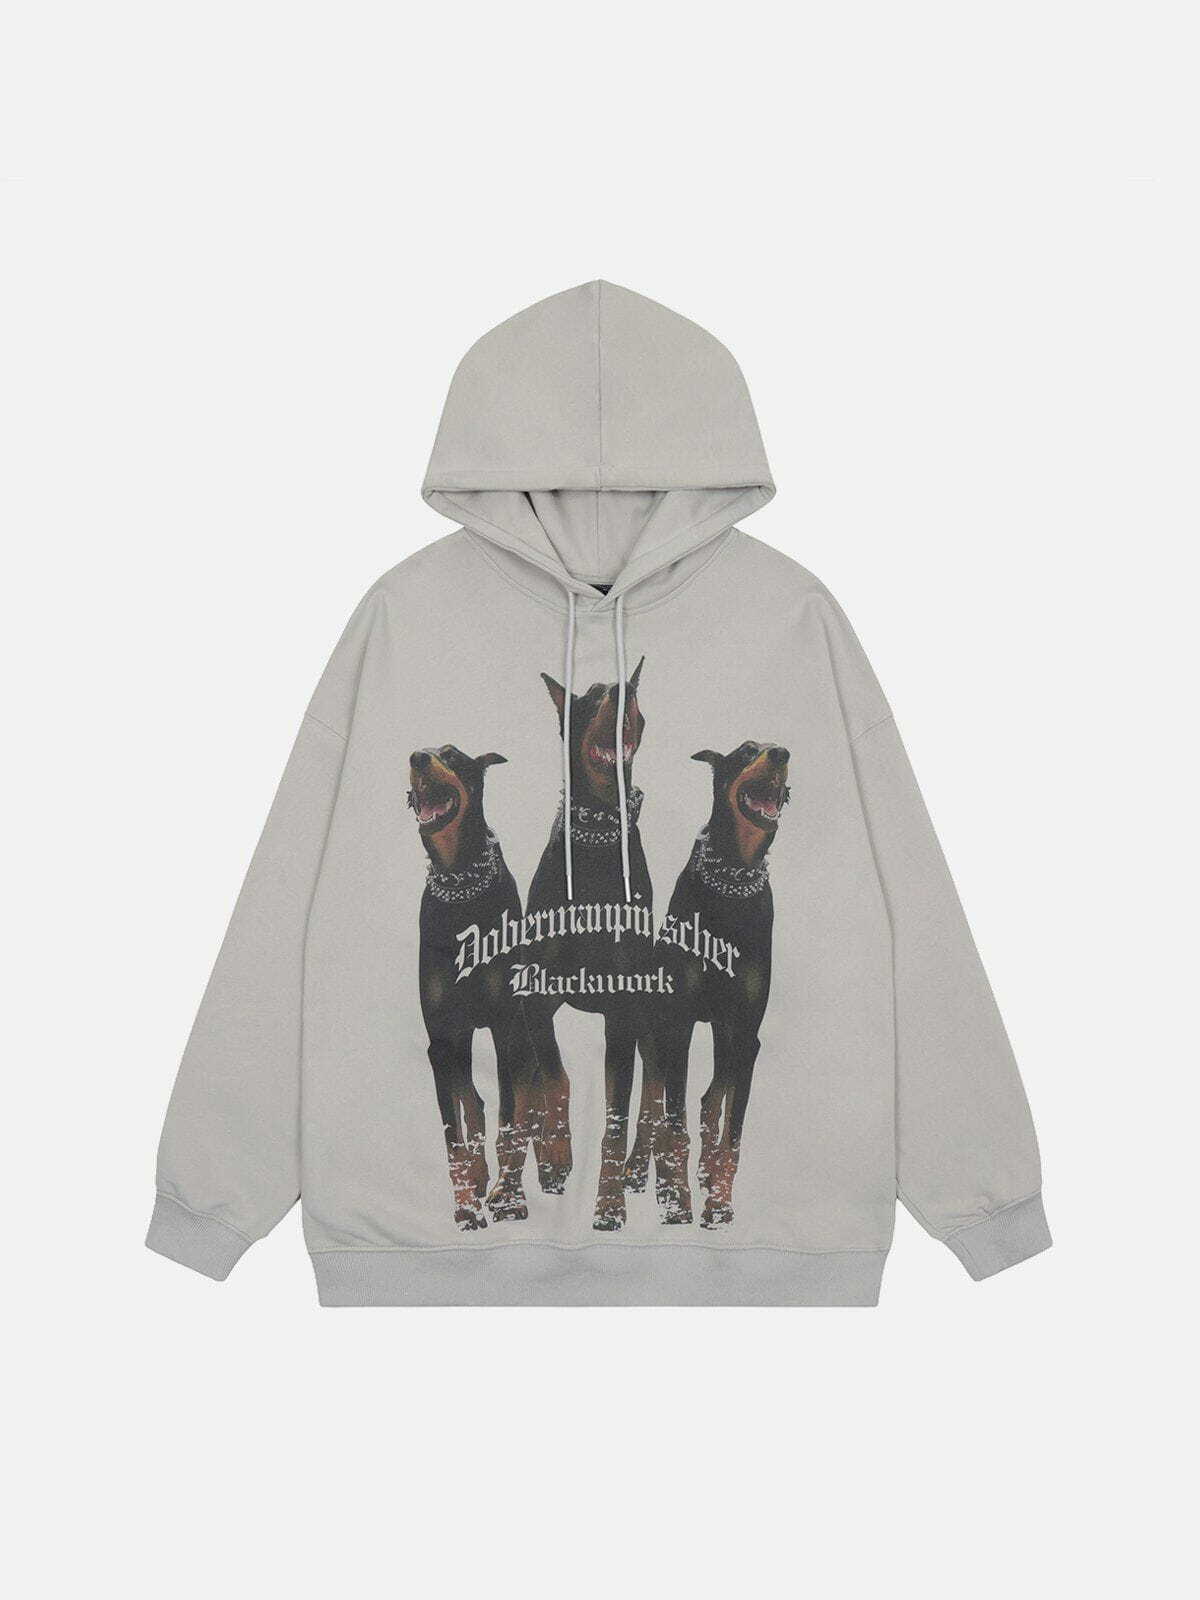 dynamic doberman print hoodie edgy streetwear 3078